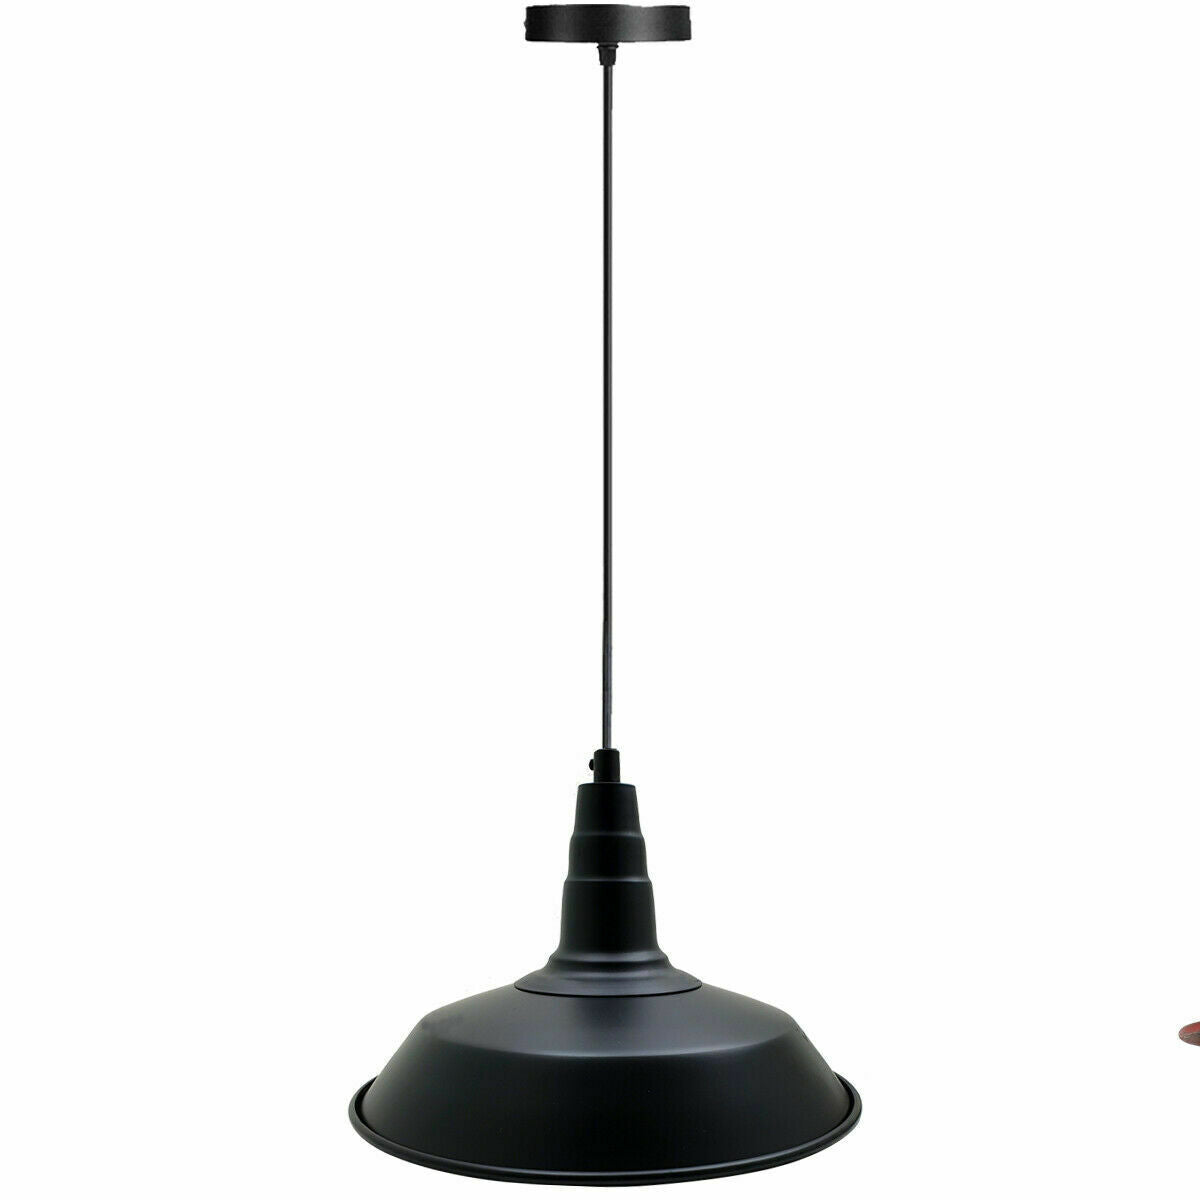 Industrial Vintage New Pendant Ceiling Light 36cm Bowl Shade Black E27Uk Holder~3723 - LEDSone UK Ltd